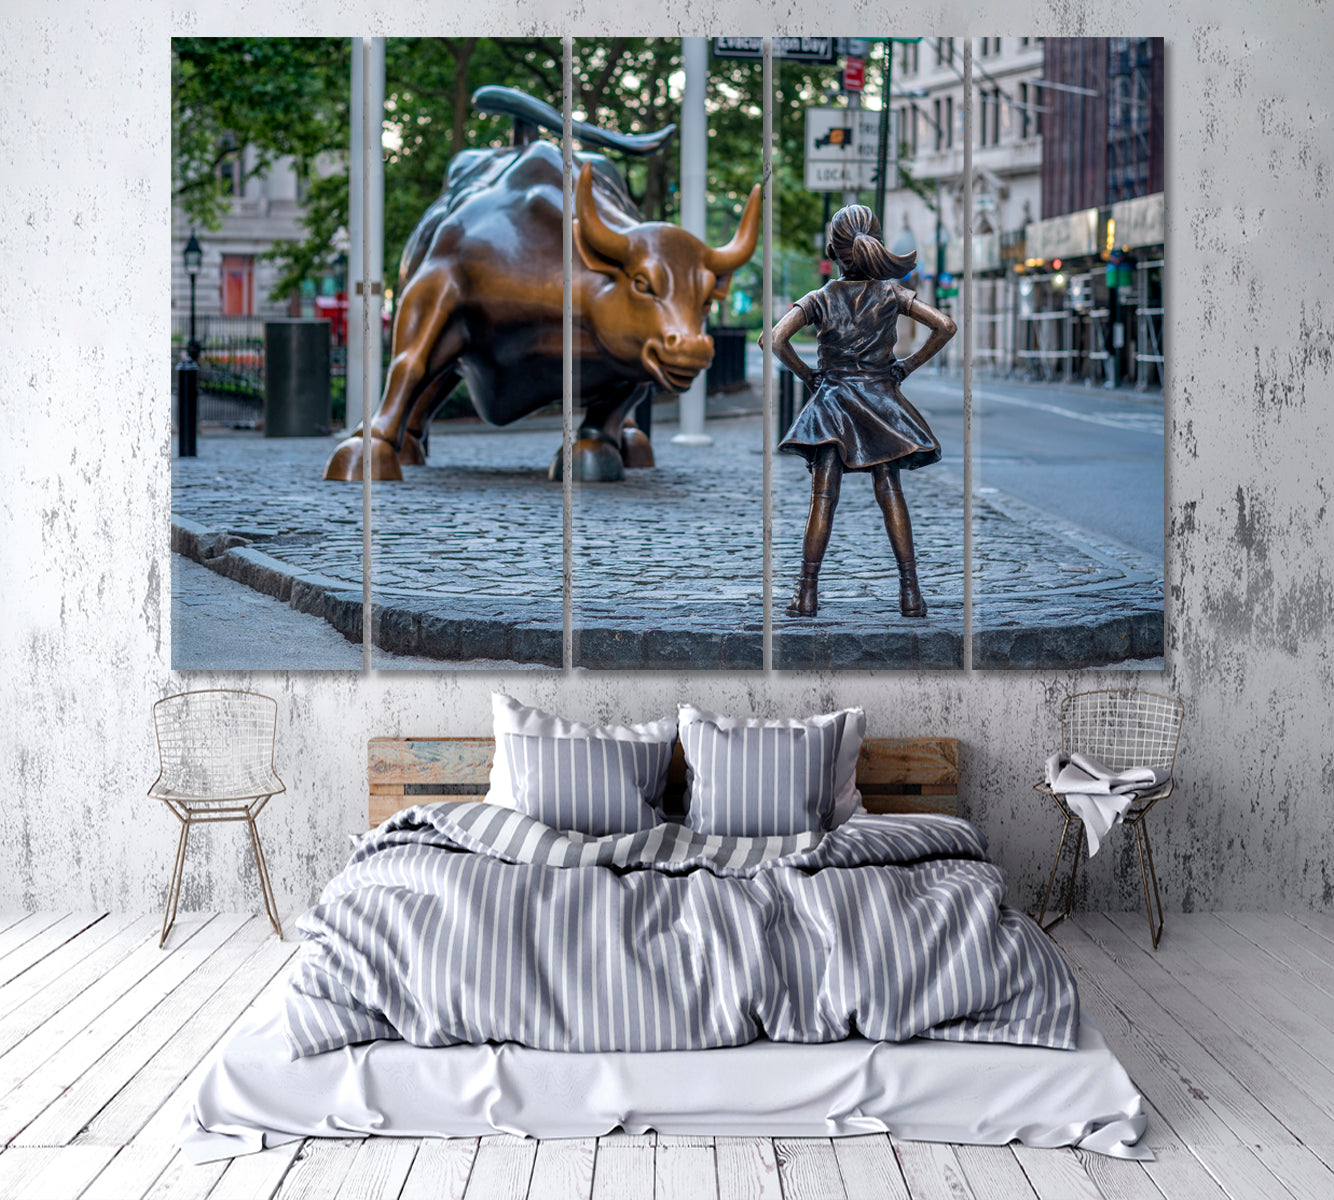 Charging Bull Manhattan New York City Famous Landmark Famous Landmarks Artwork Print Artesty 5 panels 36" x 24" 